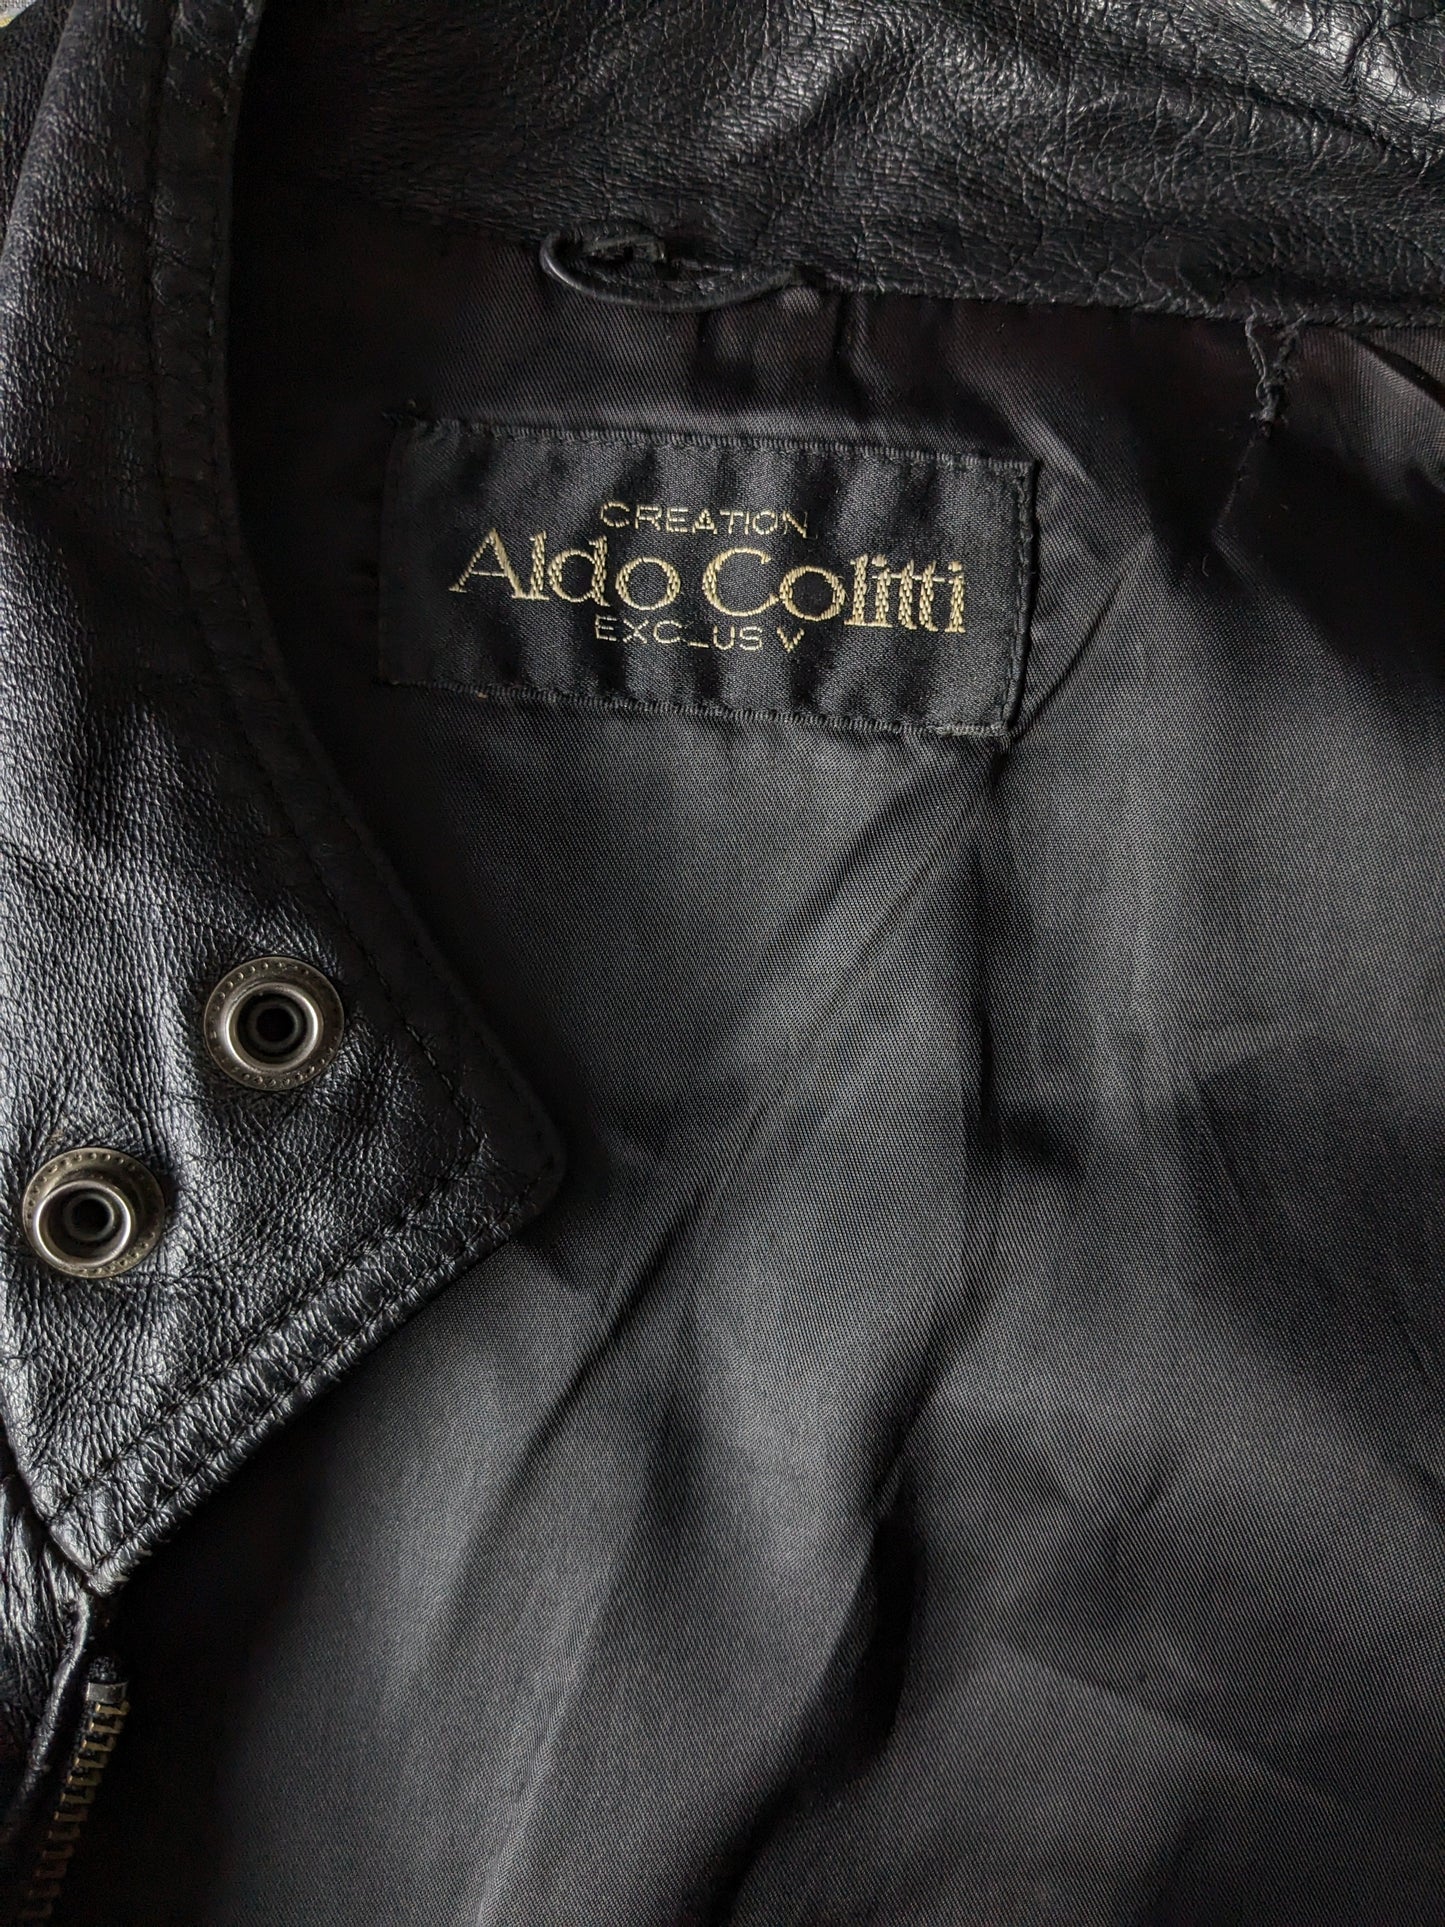 Vintage Aldo Colitti 80 - 90 Learn Body Body Warmer / Wistcoat con bolsillos internos. Negro. Talla L.